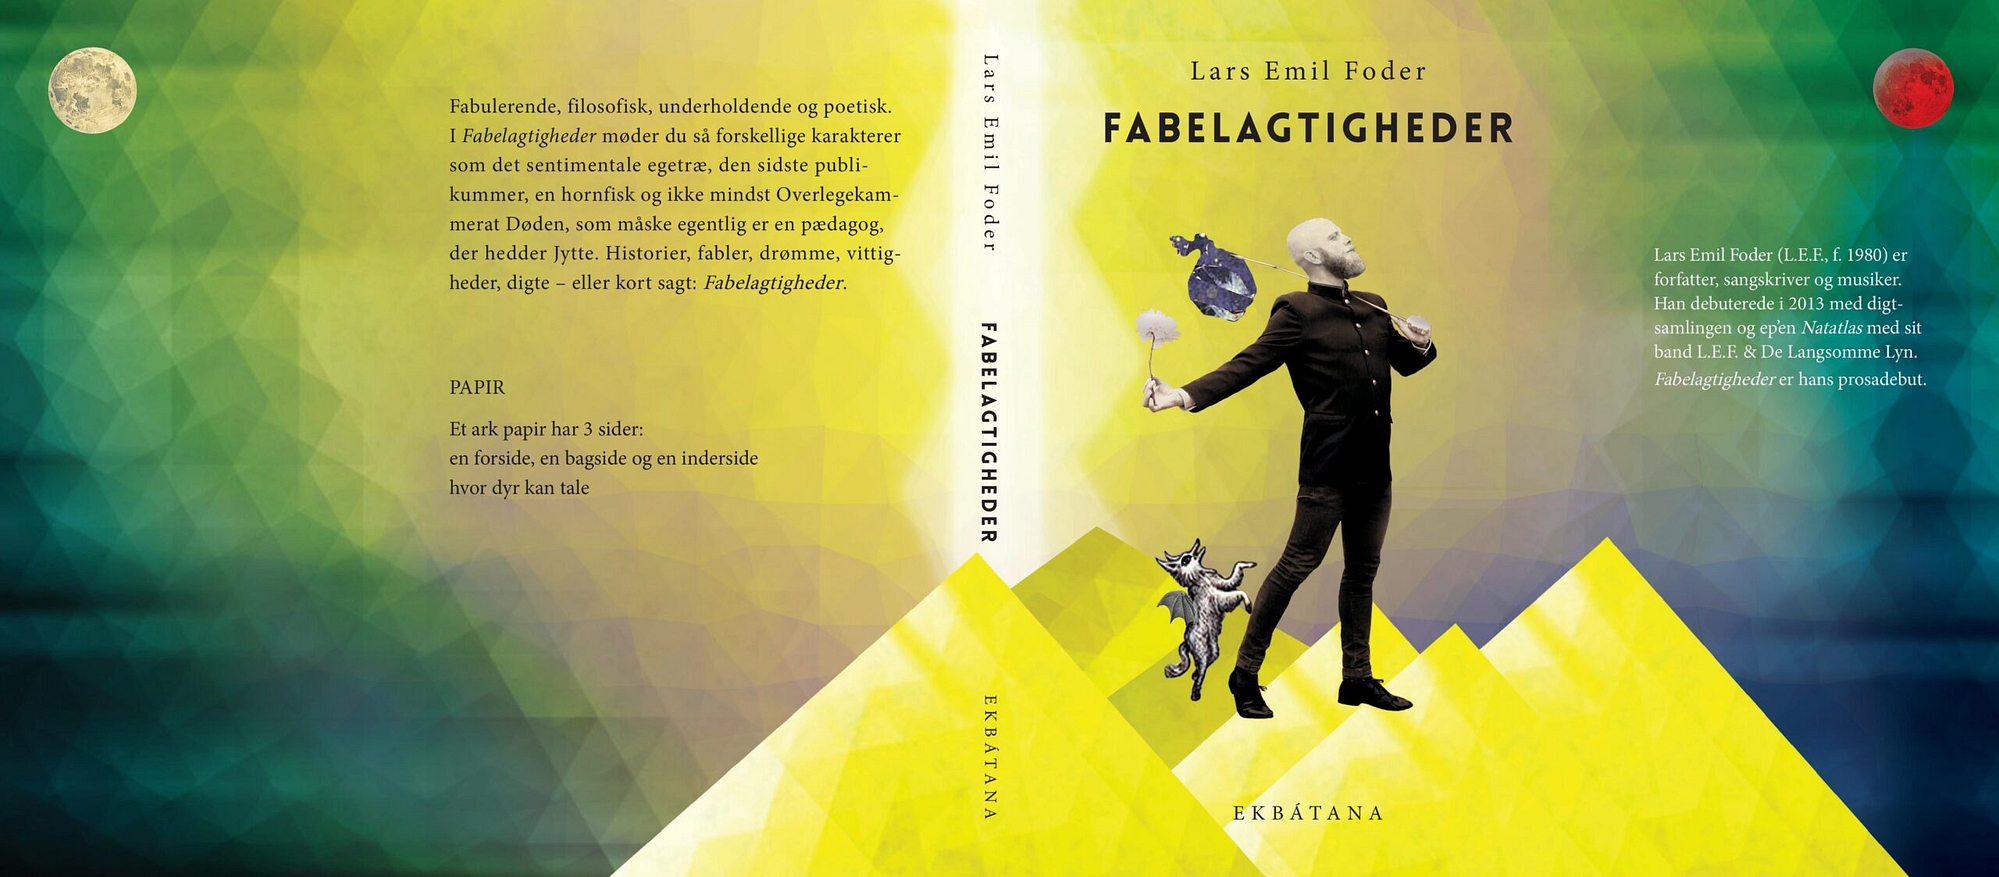 Fabelagtigheder, Lars Emil Foder